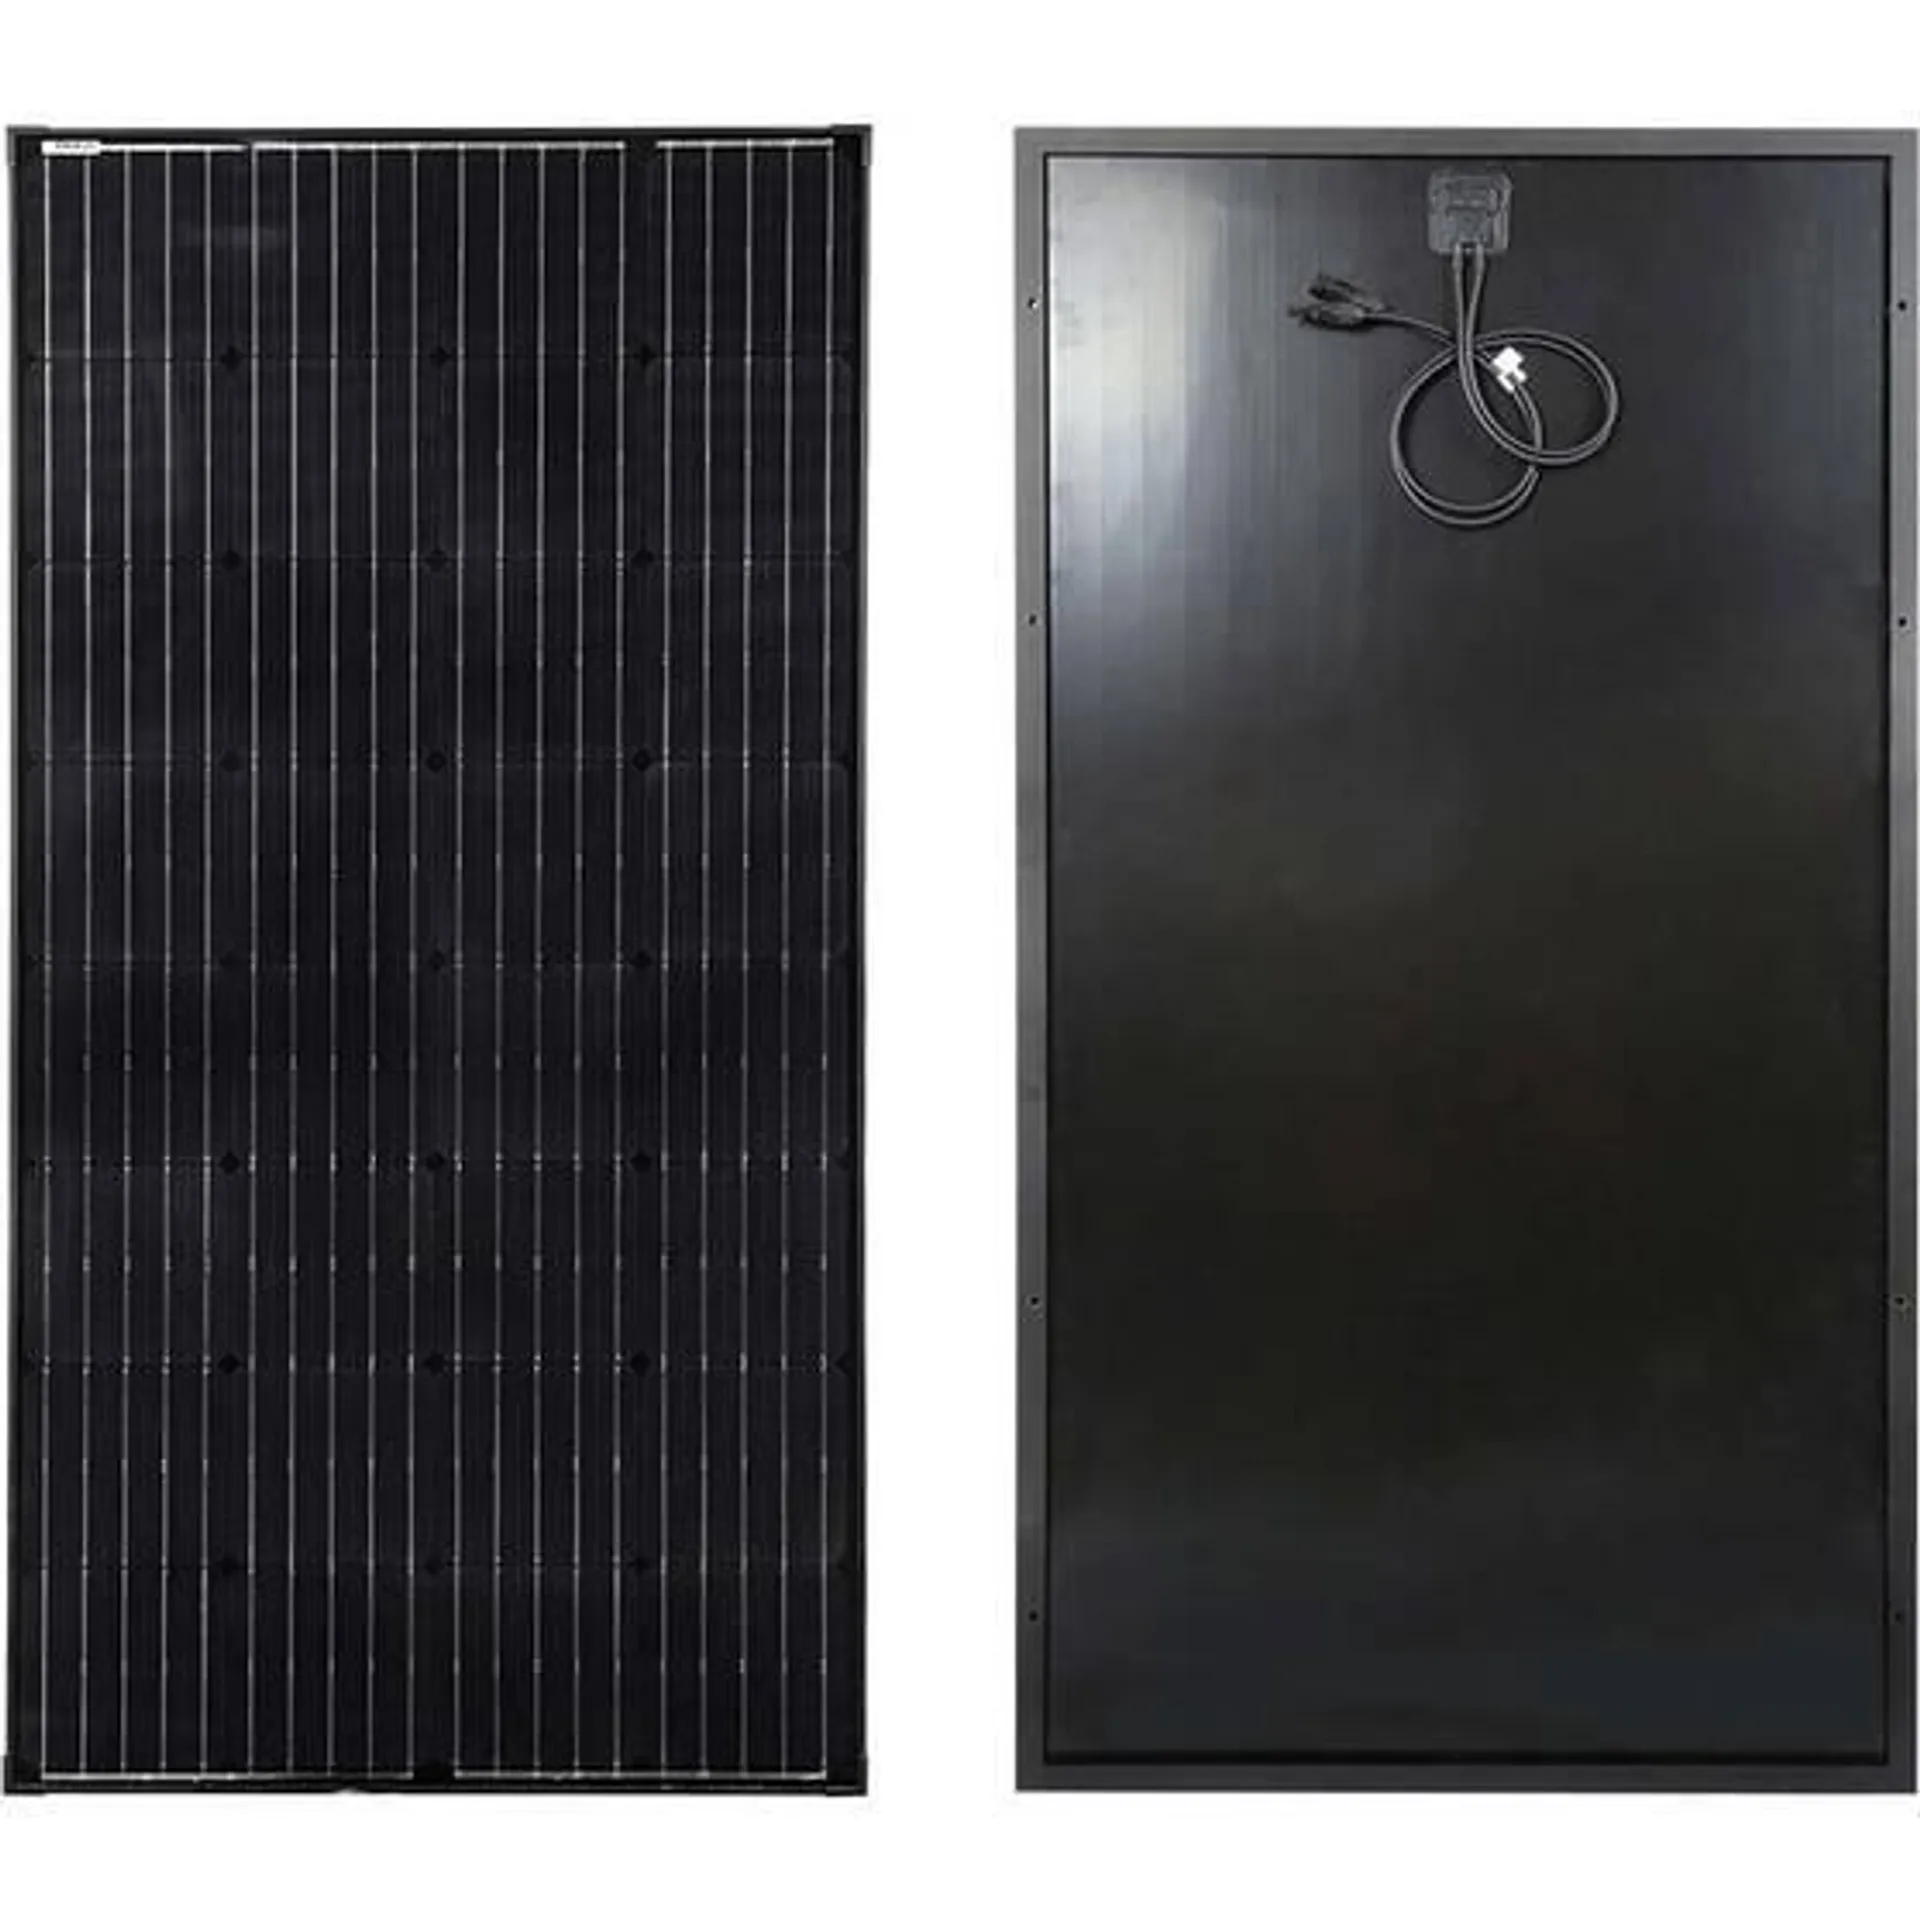 Hardkorr 170W Fixed Solar Panel